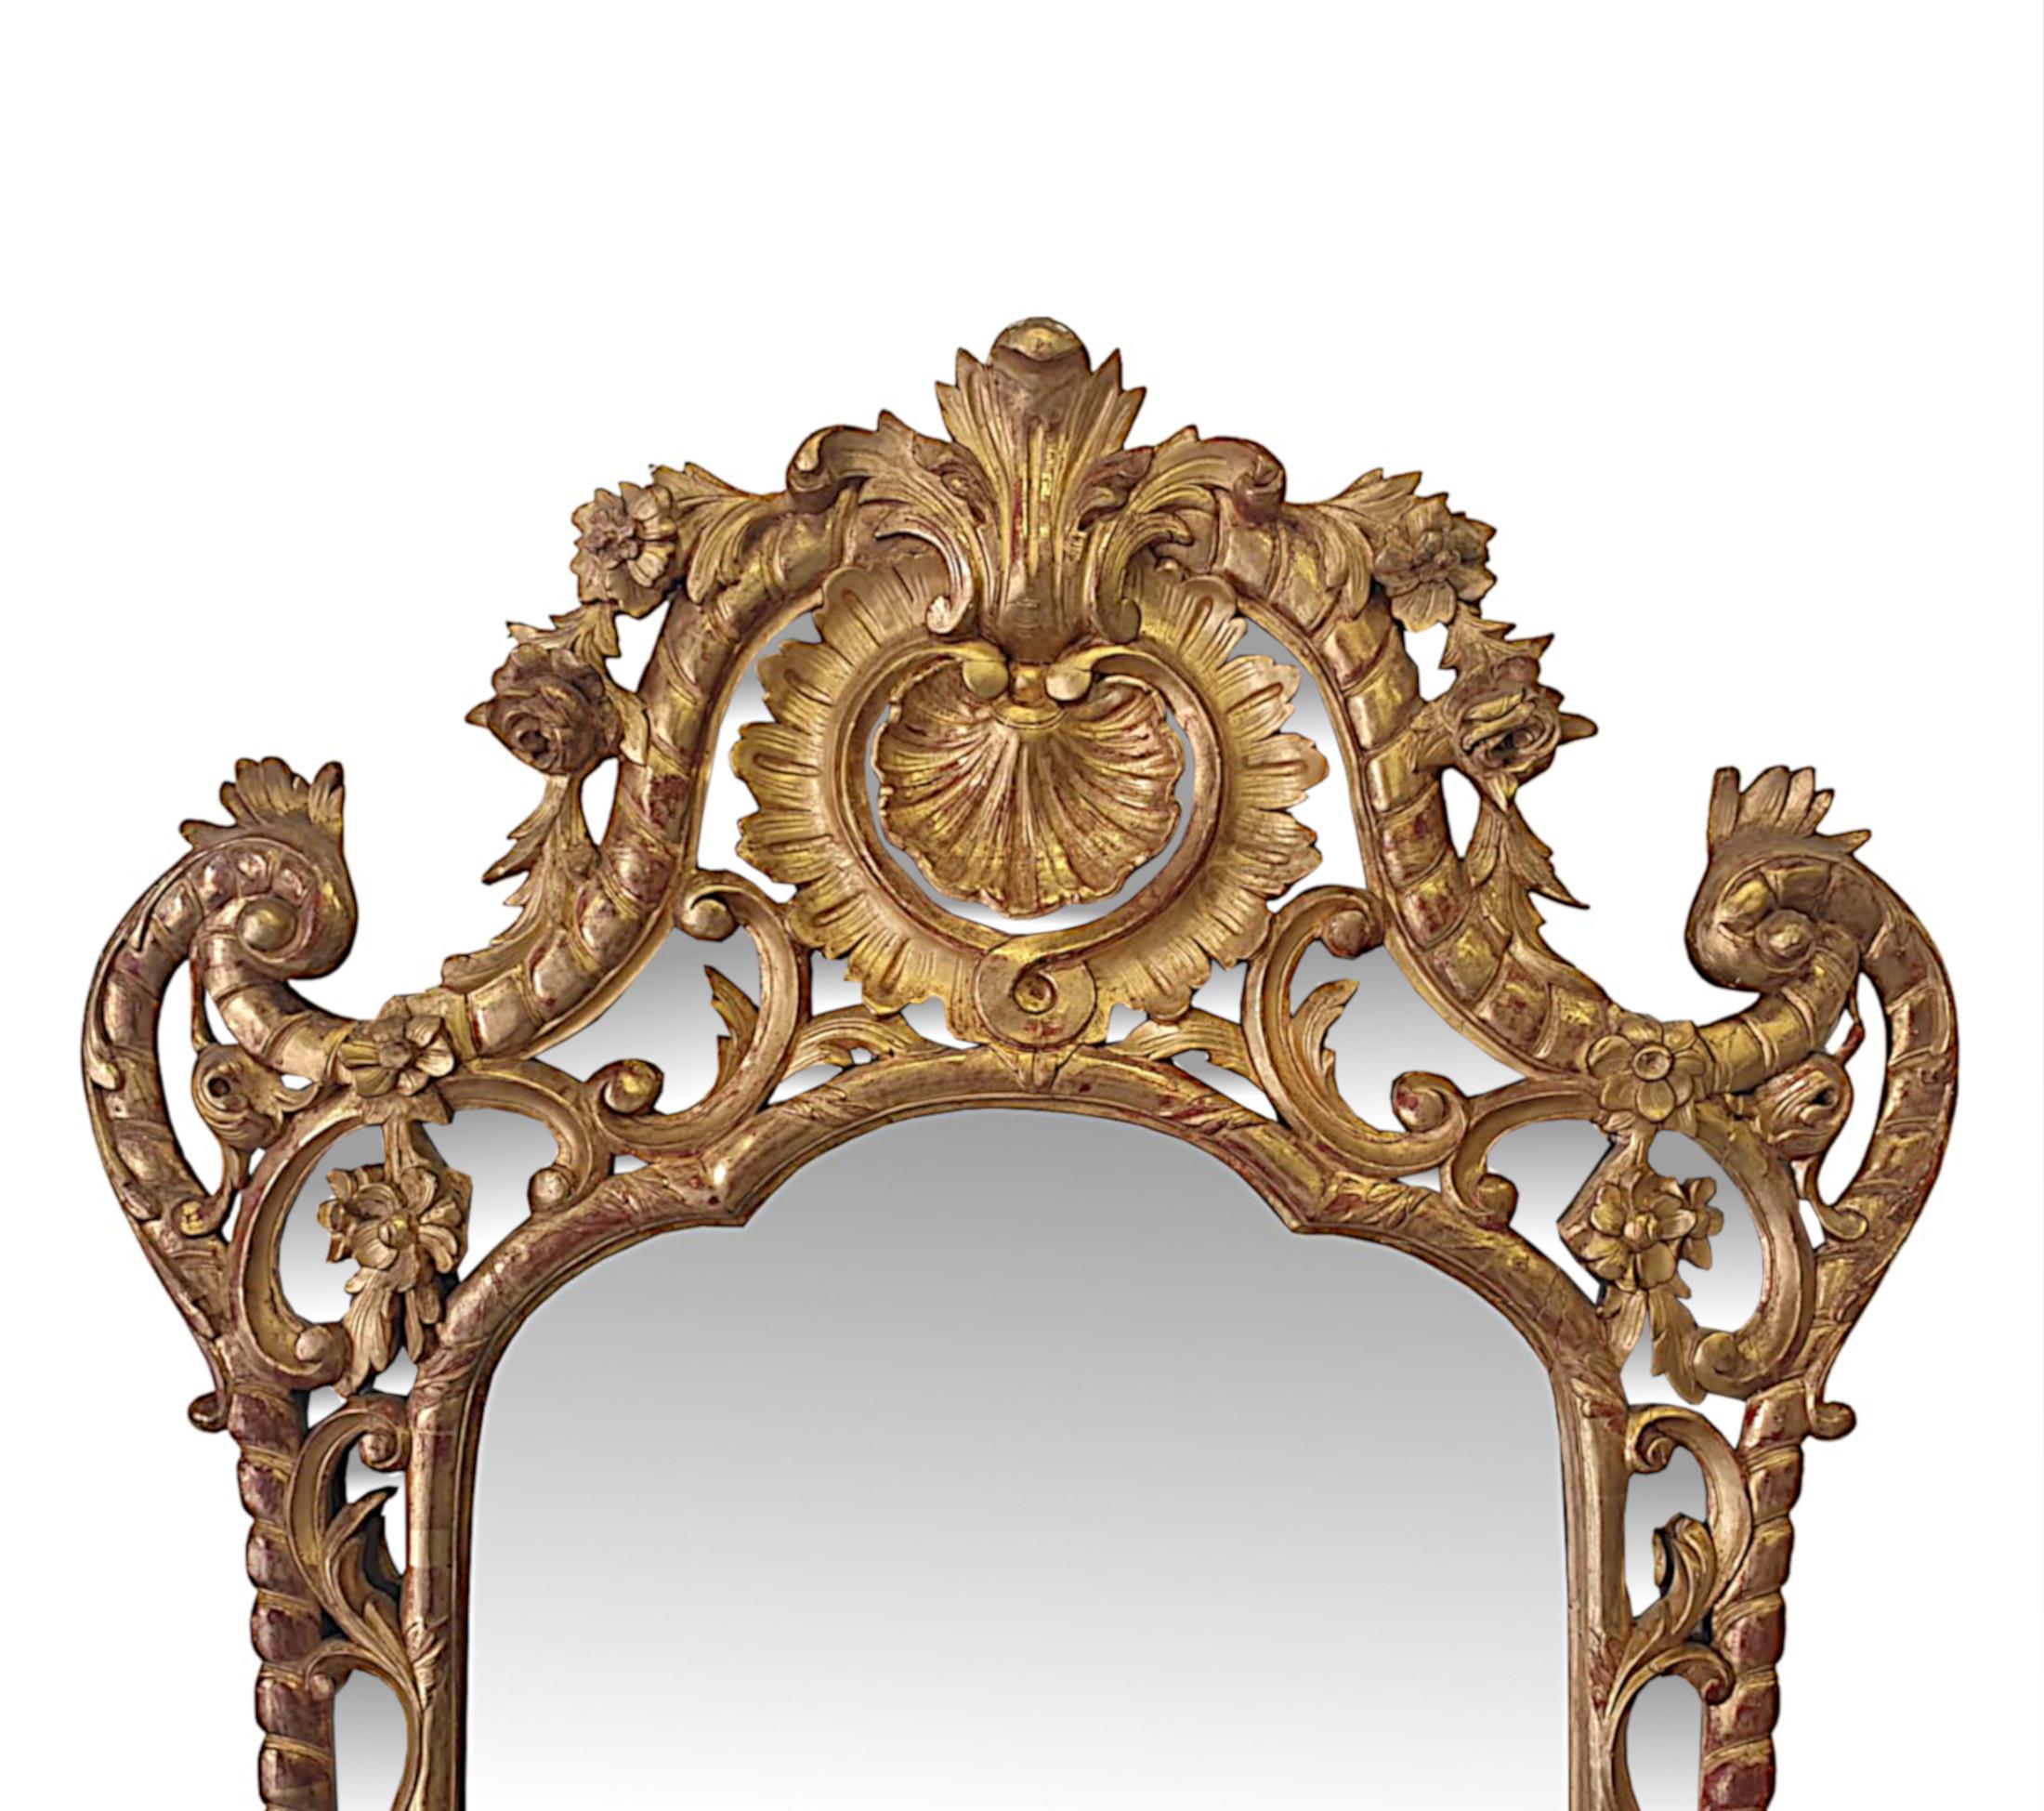 Ein seltener und außergewöhnlicher Übermantelspiegel aus Goldholz aus dem frühen 19. Jahrhundert von beeindruckenden Ausmaßen. Die originale, abgeschrägte und geformte Spiegelglasplatte befindet sich in einem fein handgeschnitzten, geformten und